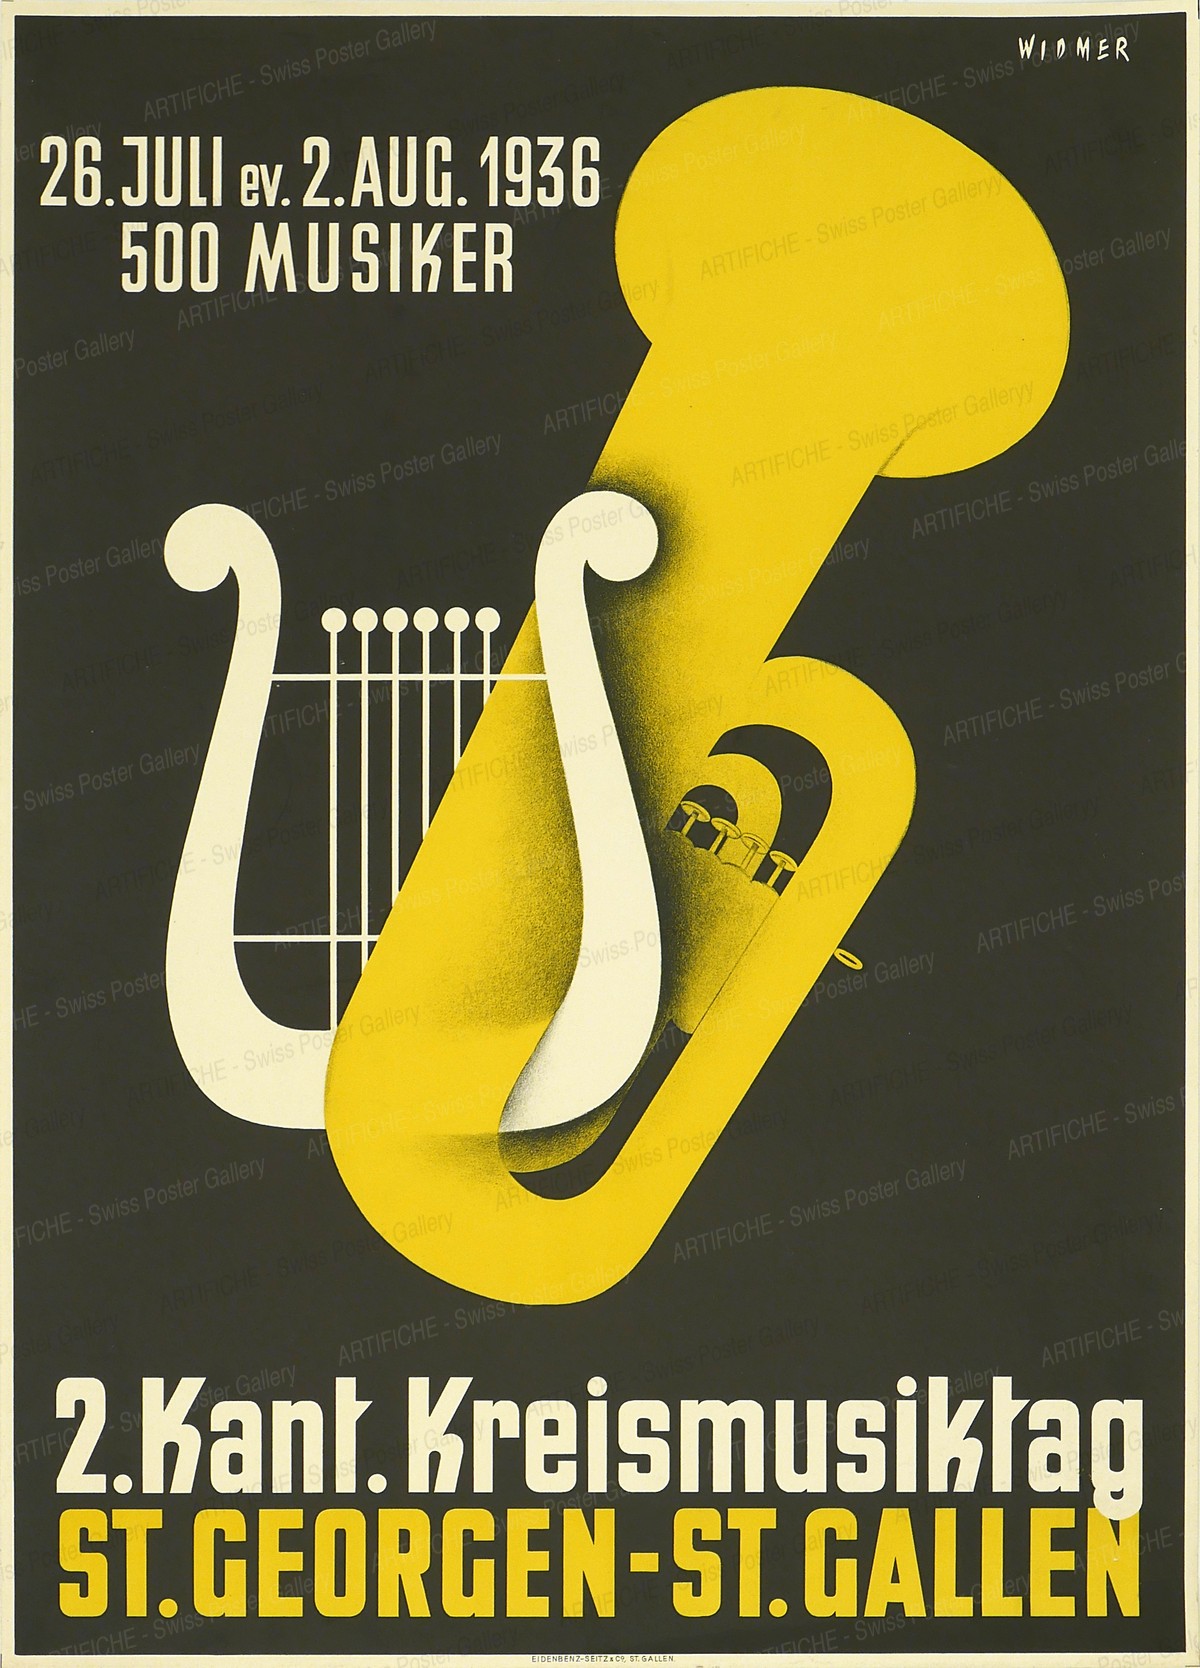 Music day St. Georgen – St. Gallen 1936